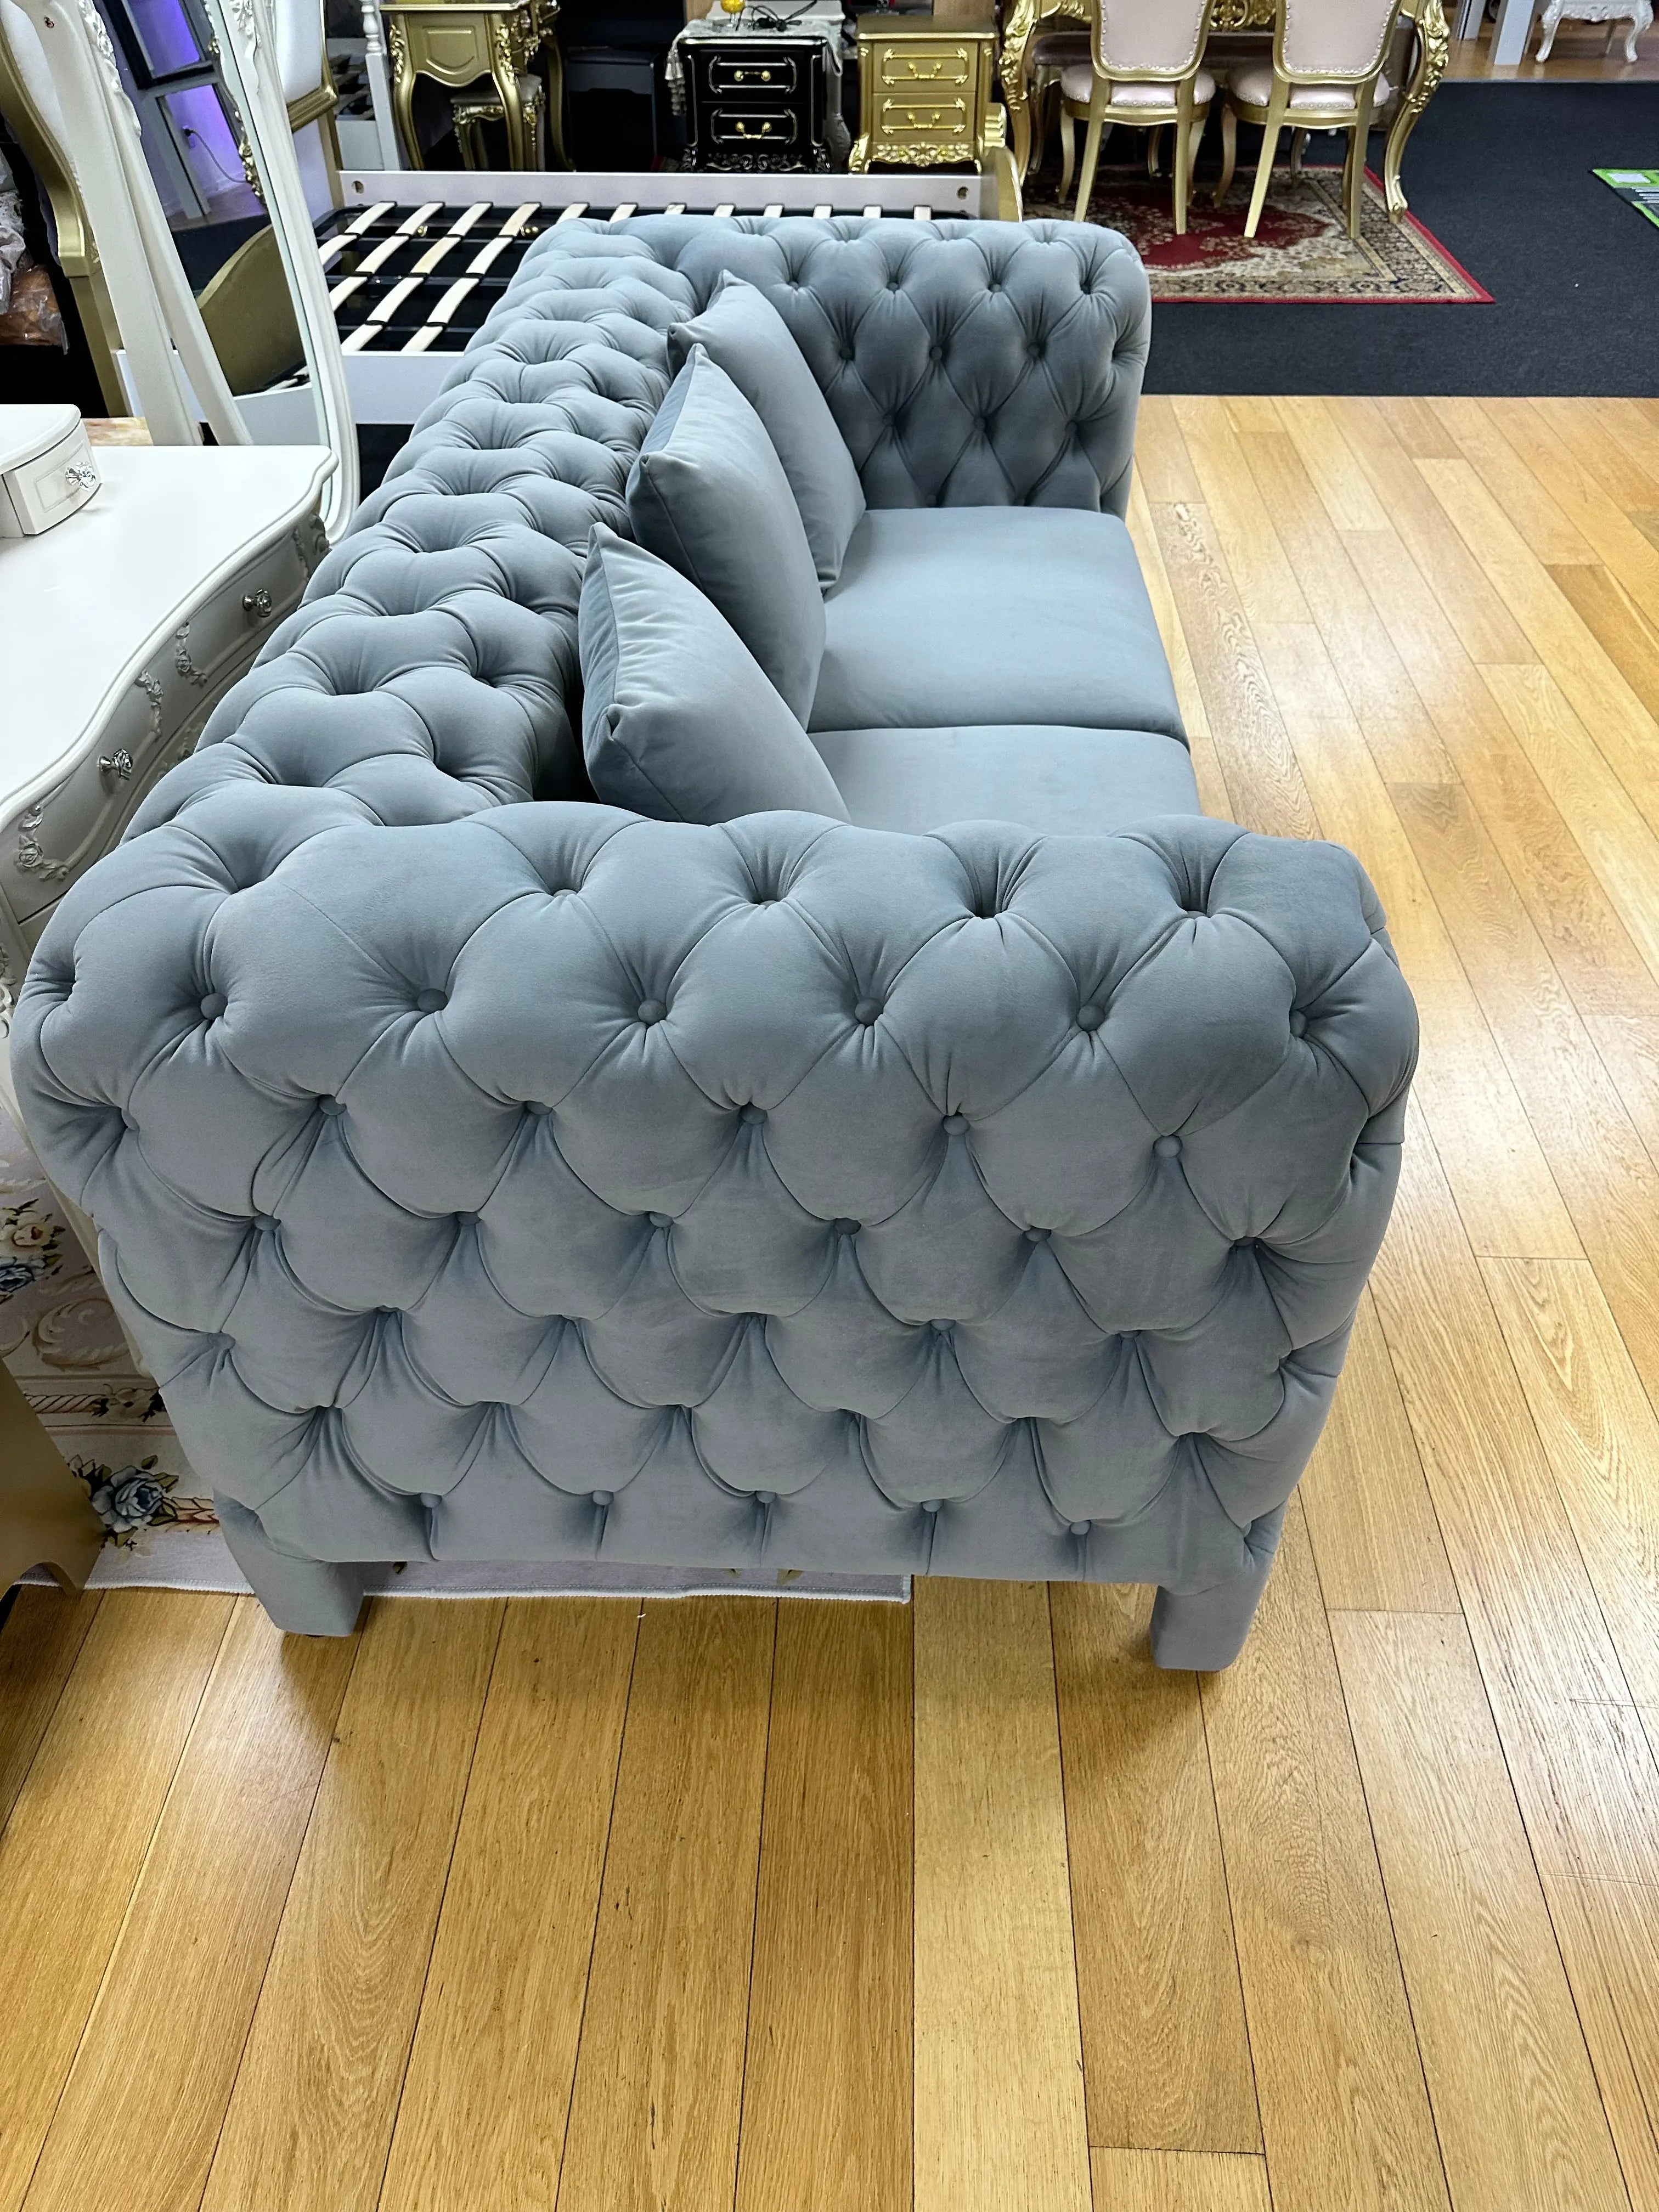 W 51 Modern Design Sofa Pro Furniture